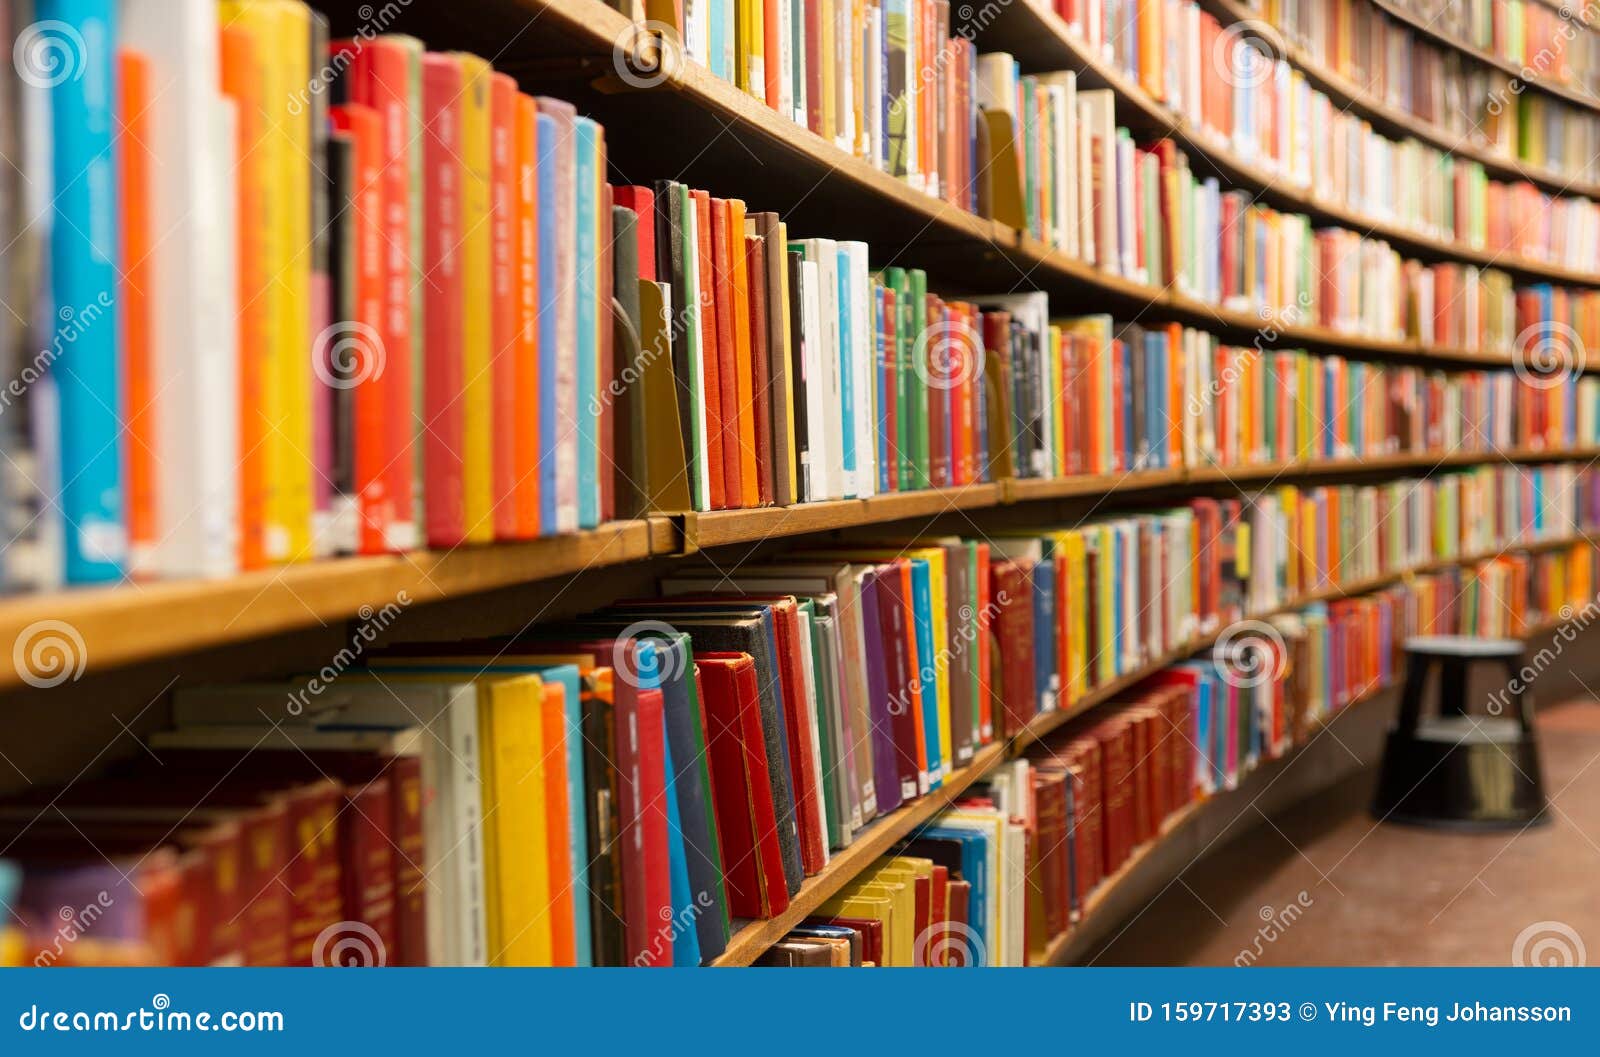 Βιβλιοθήκη με πολλά ράφια και βιβλία Στοκ Εικόνα - εικόνα από : 159717393